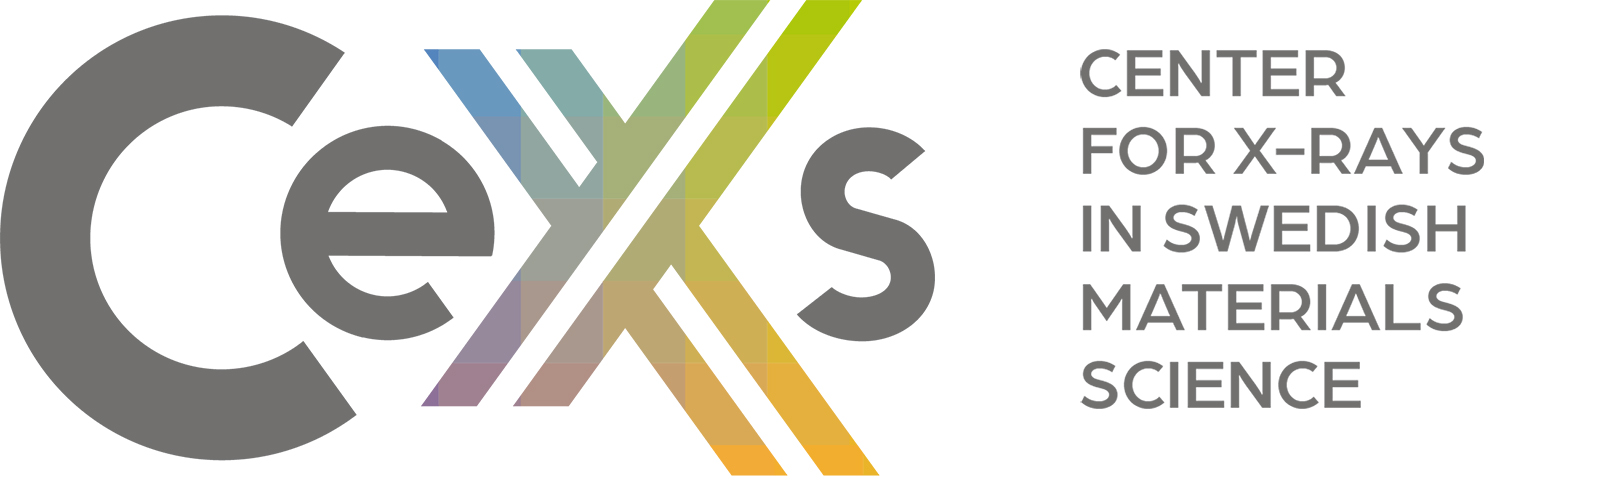 CeXS logo